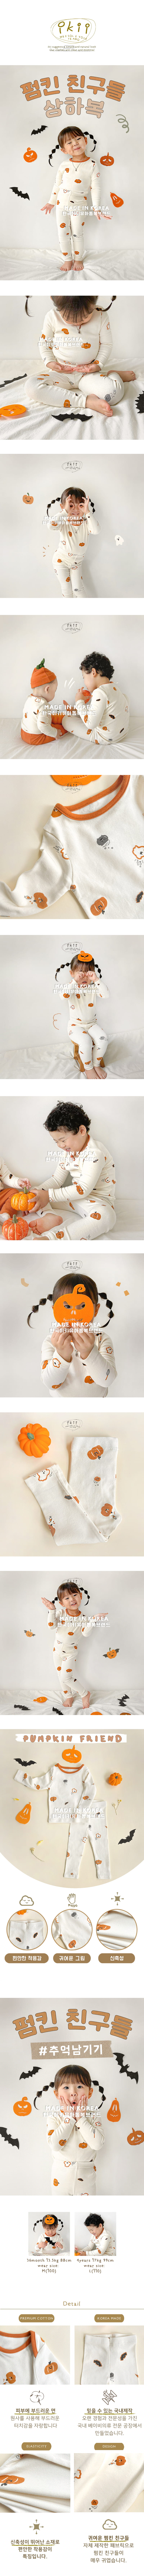 Ikii - Korean Baby Fashion - #onlinebabyboutique - Pumpkin friend T+B 